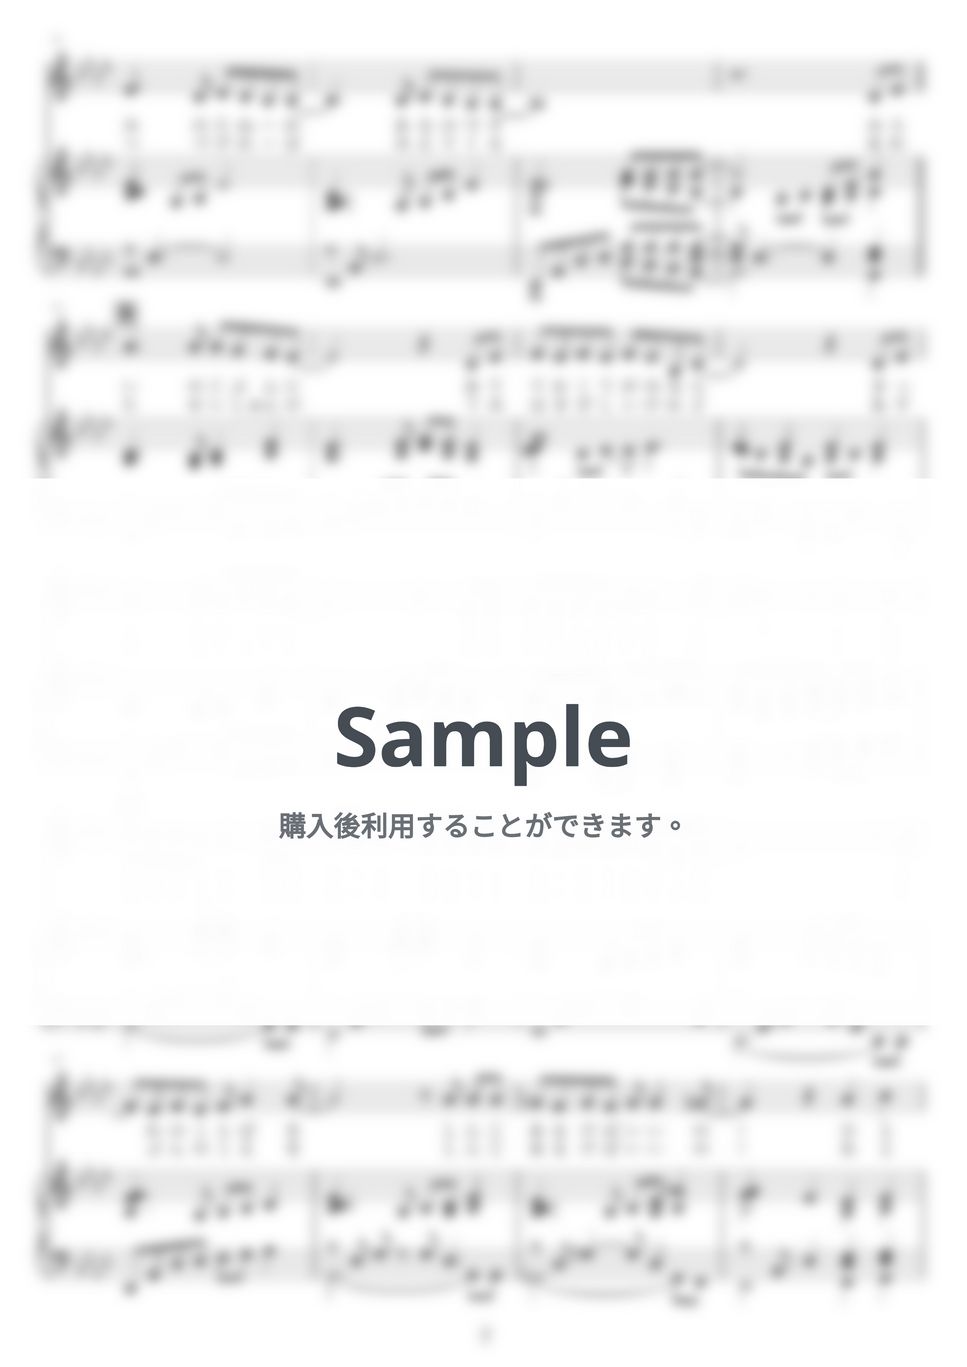 アンジェラ・アキ - 手紙 ~拝啓 十五の君へ~ by NOTES music